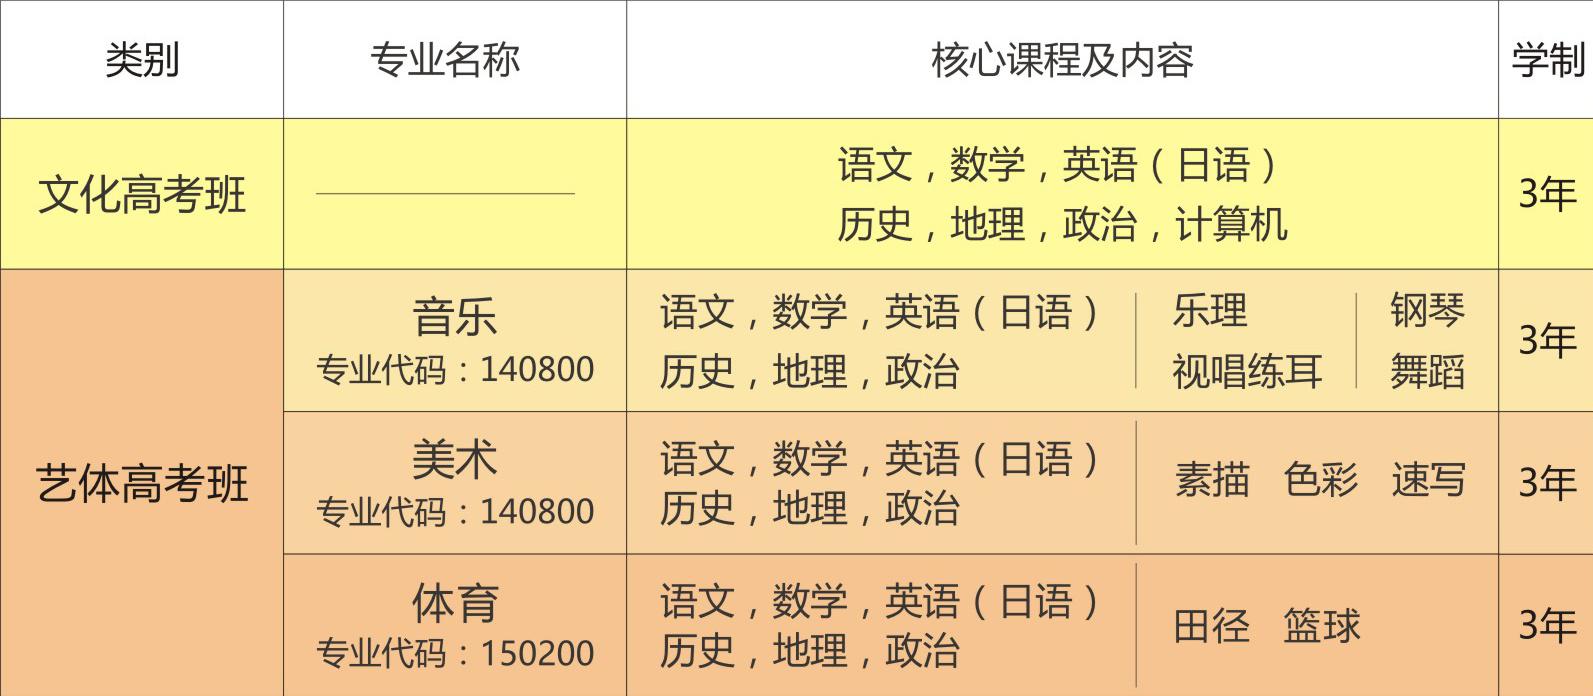 高考升学专-2020.10.20_看图王.jpg